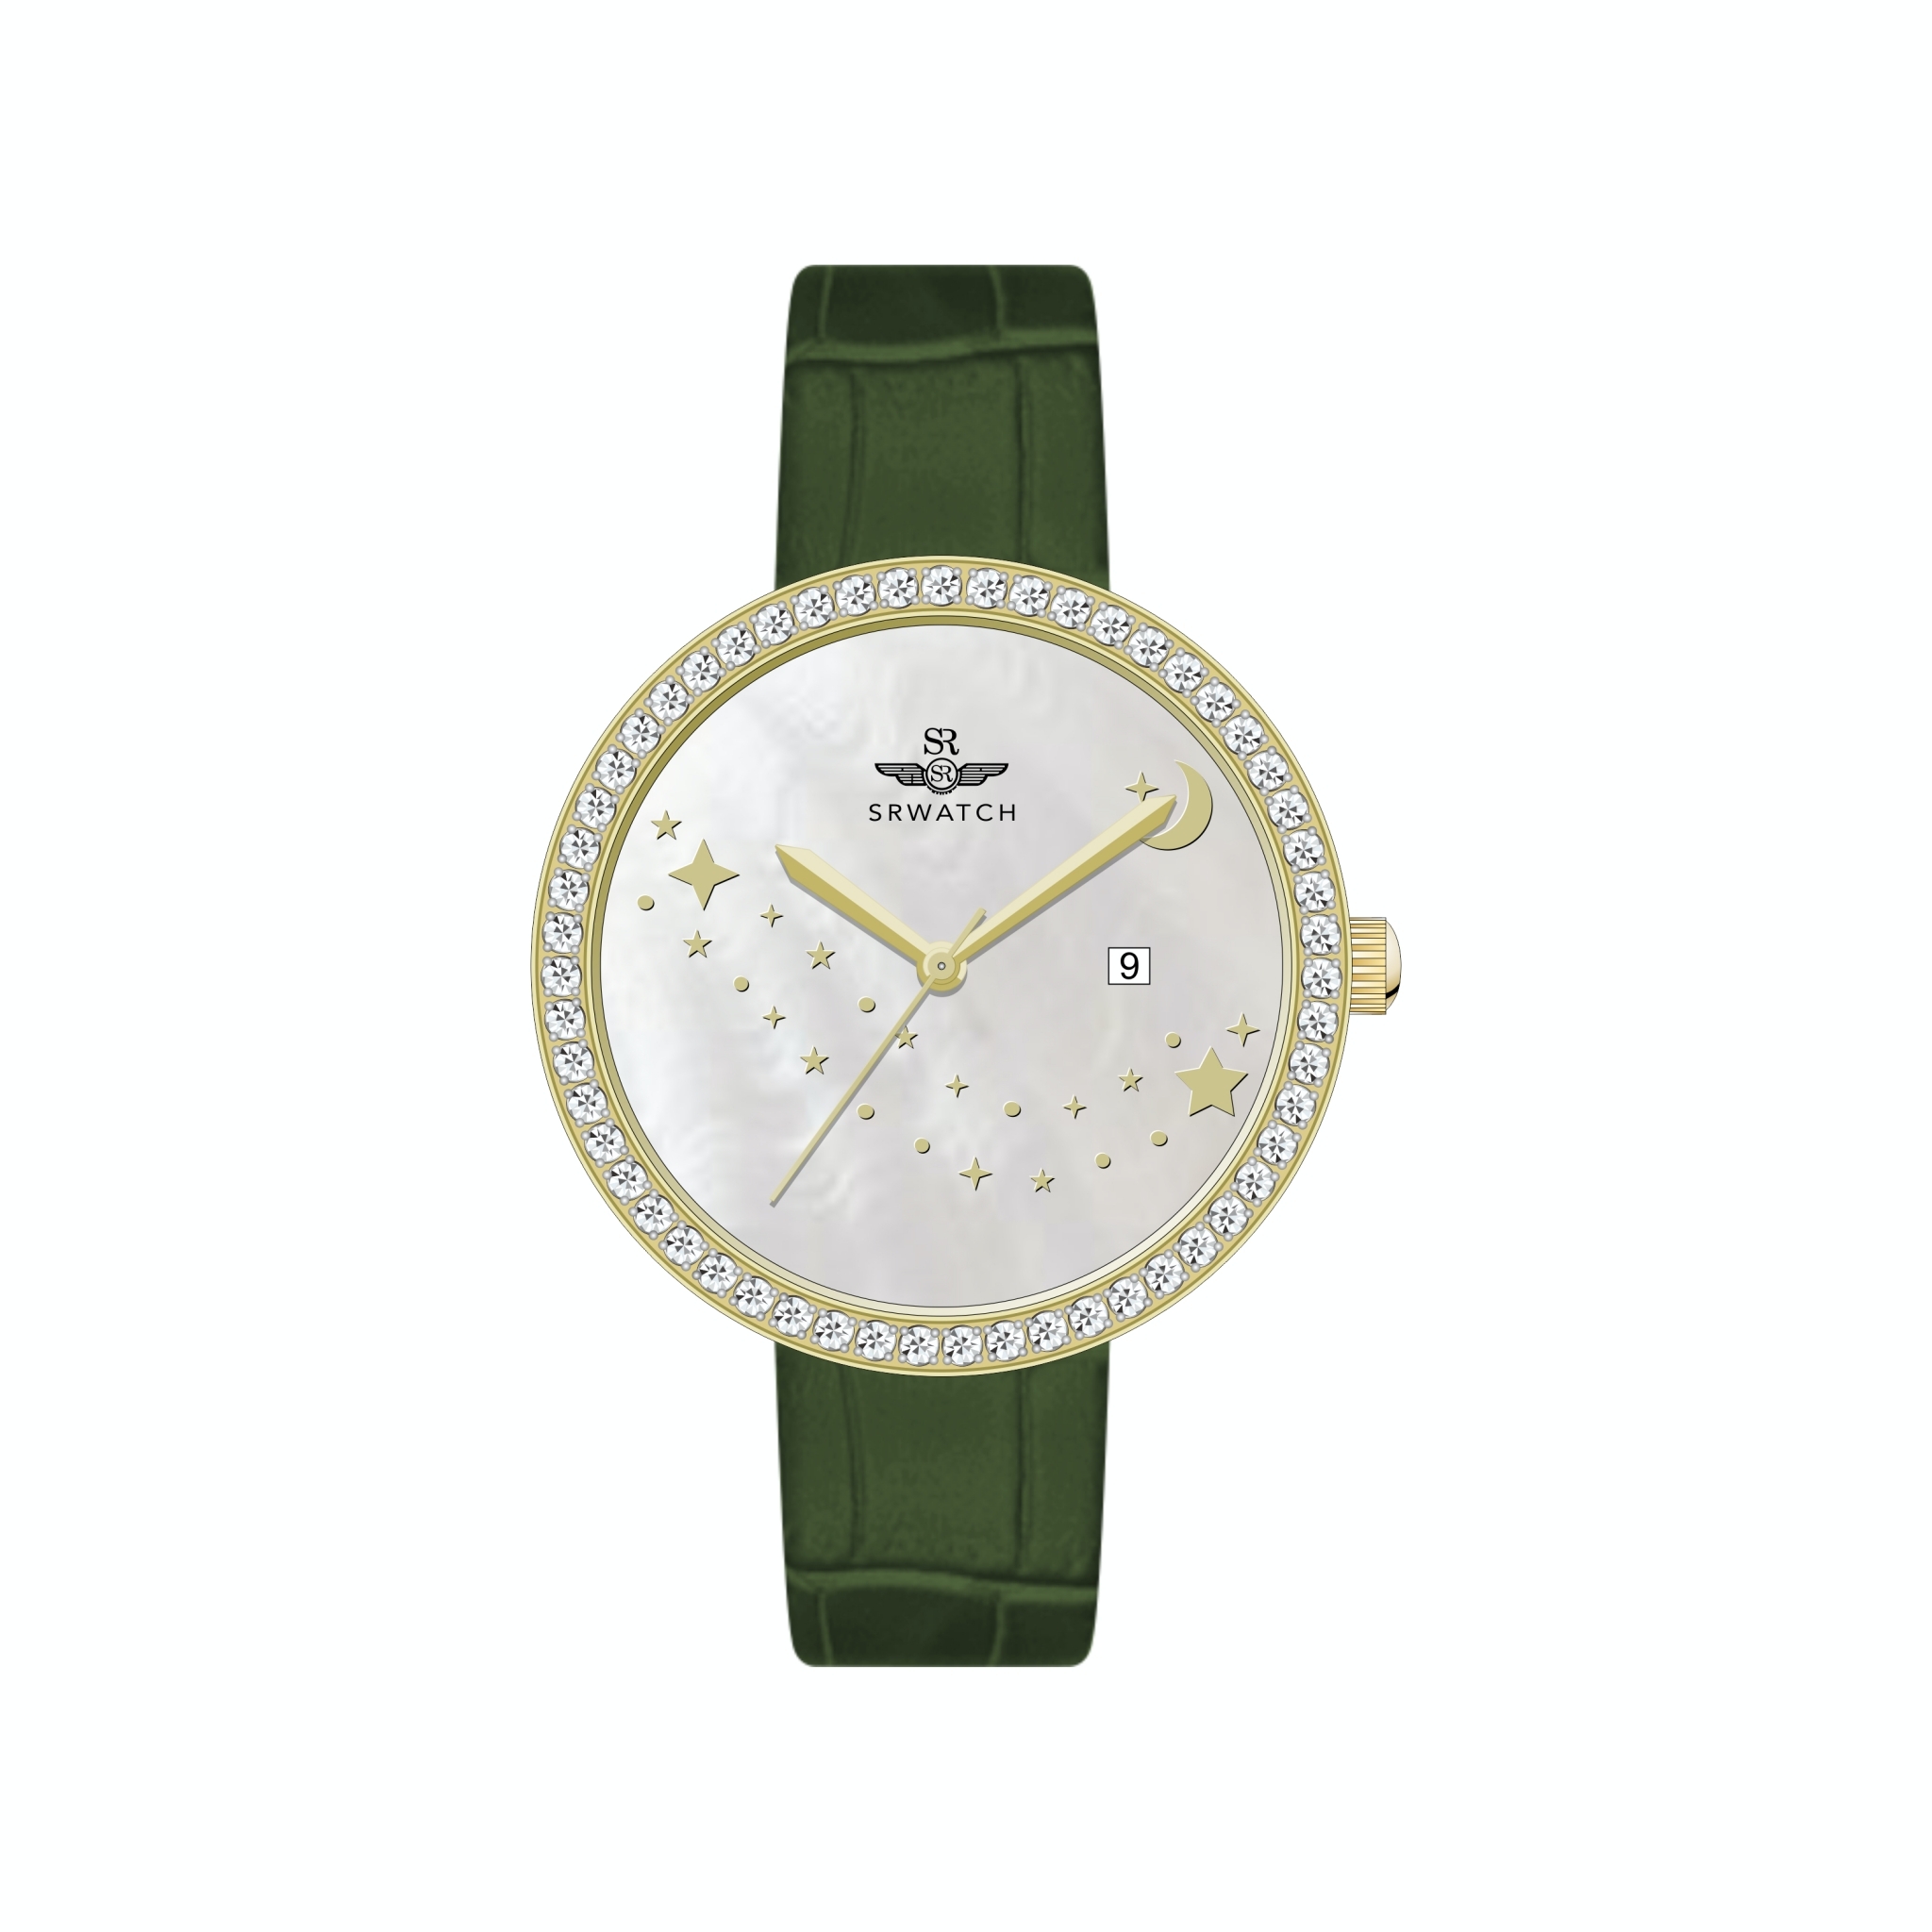 Đồng hồ nữ Sr SL5005.4602BL